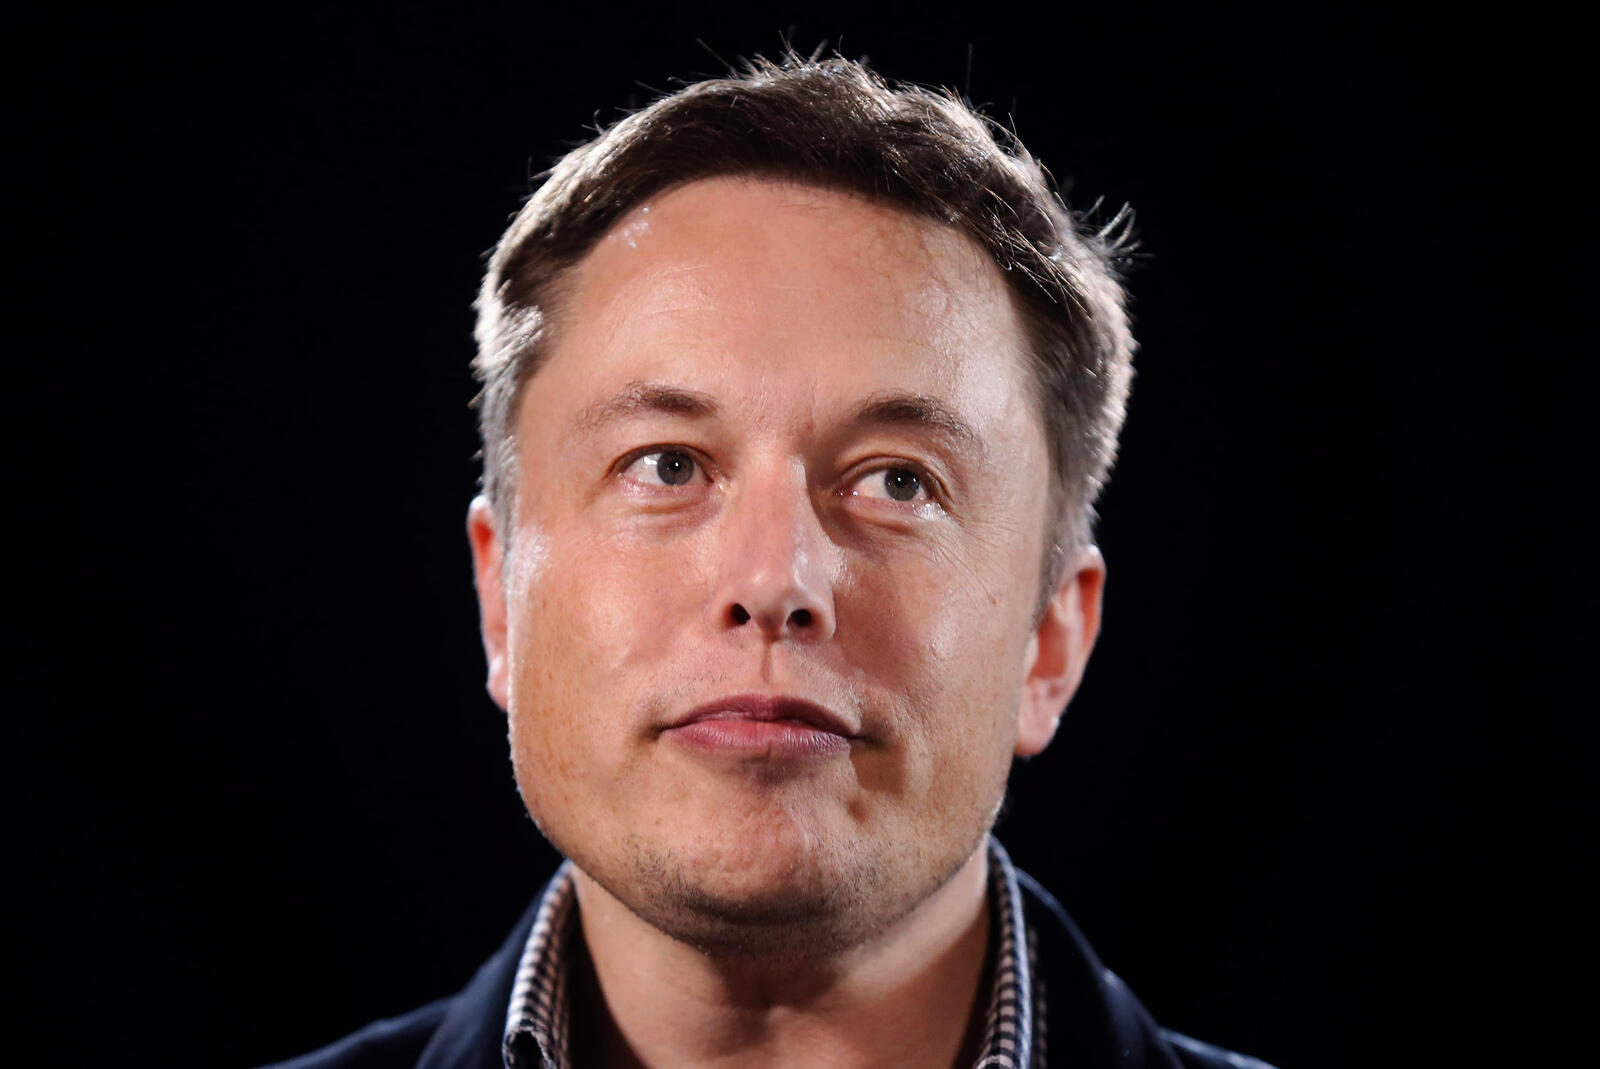 Neuralink : Elon Musk affirme que l'implant cérébral est sur le point d'être testé sur l'homme 